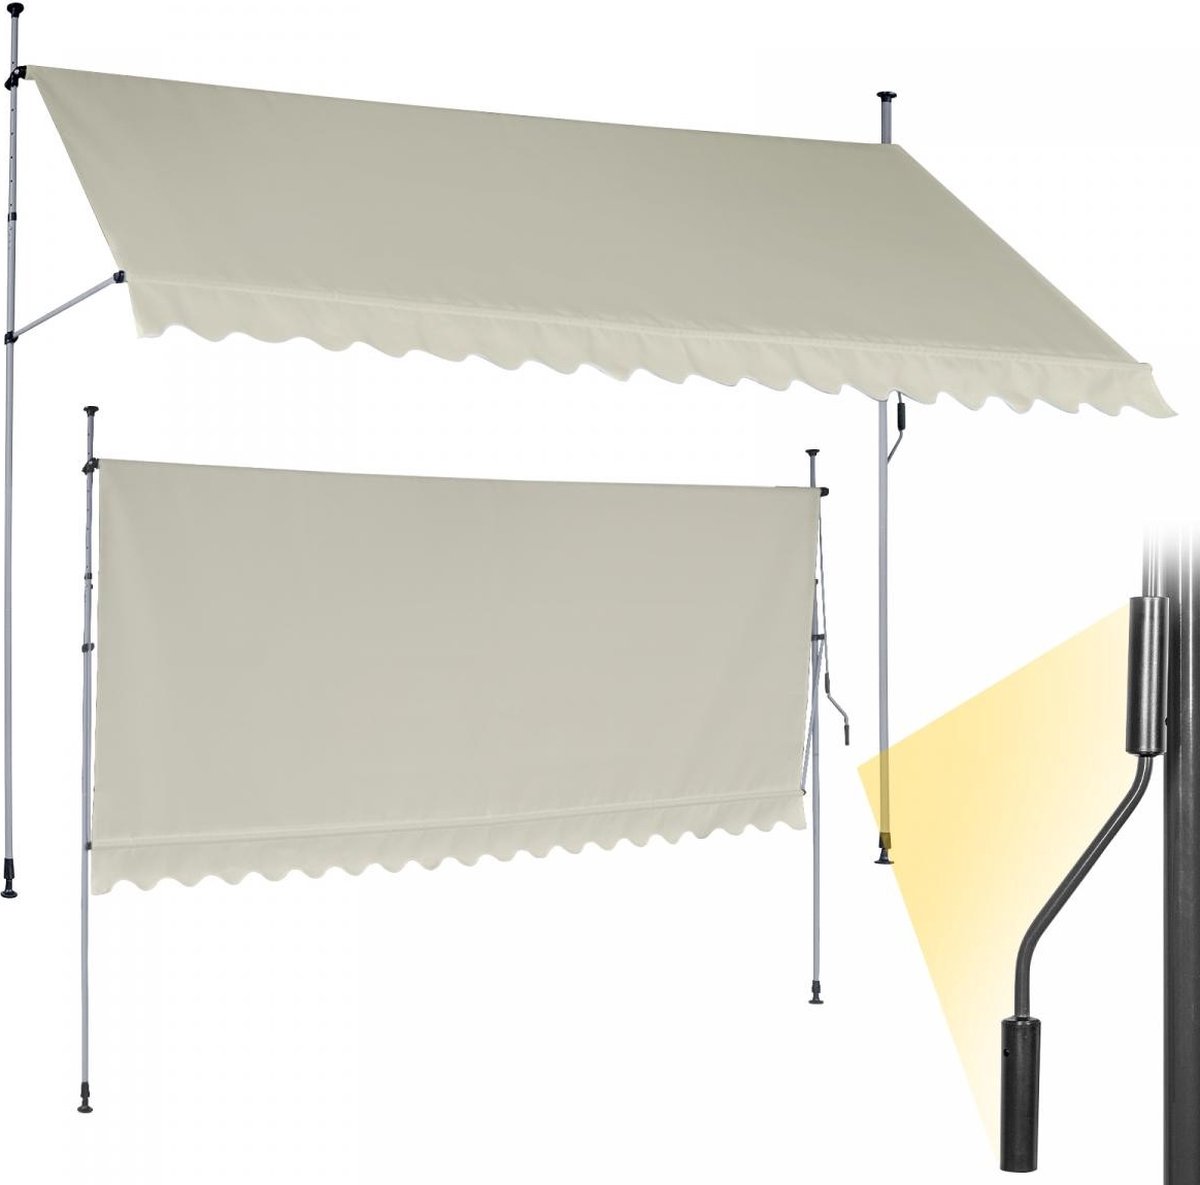 GoodVibes - In Hoogte Verstelbare Luifel met UV-bescherming en Slinger - 350x80 cm - Waterafstotend voor op het Balkon of Terras - Zonbescherming - Zonnescherm - Terrasluifel - Beige